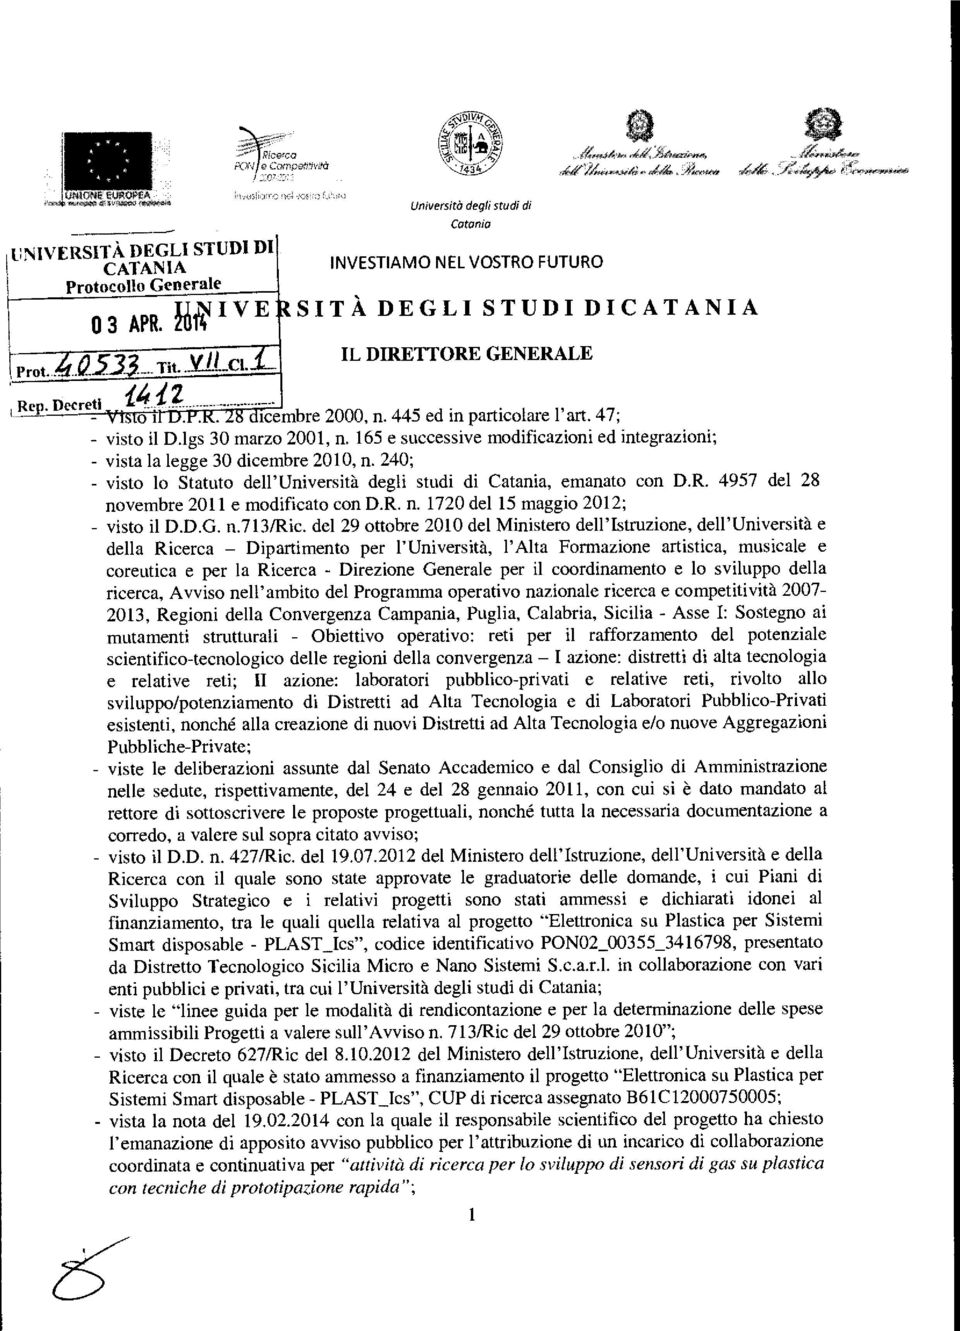 240; - visto lo Statuto dell'università degli studi di Catania, emanato con D.R. 4957 del 28 novembre 2011 e modificato con D.R. n. 1720 del 15 maggio 2012; - visto il D.D.G. n.713/ric.